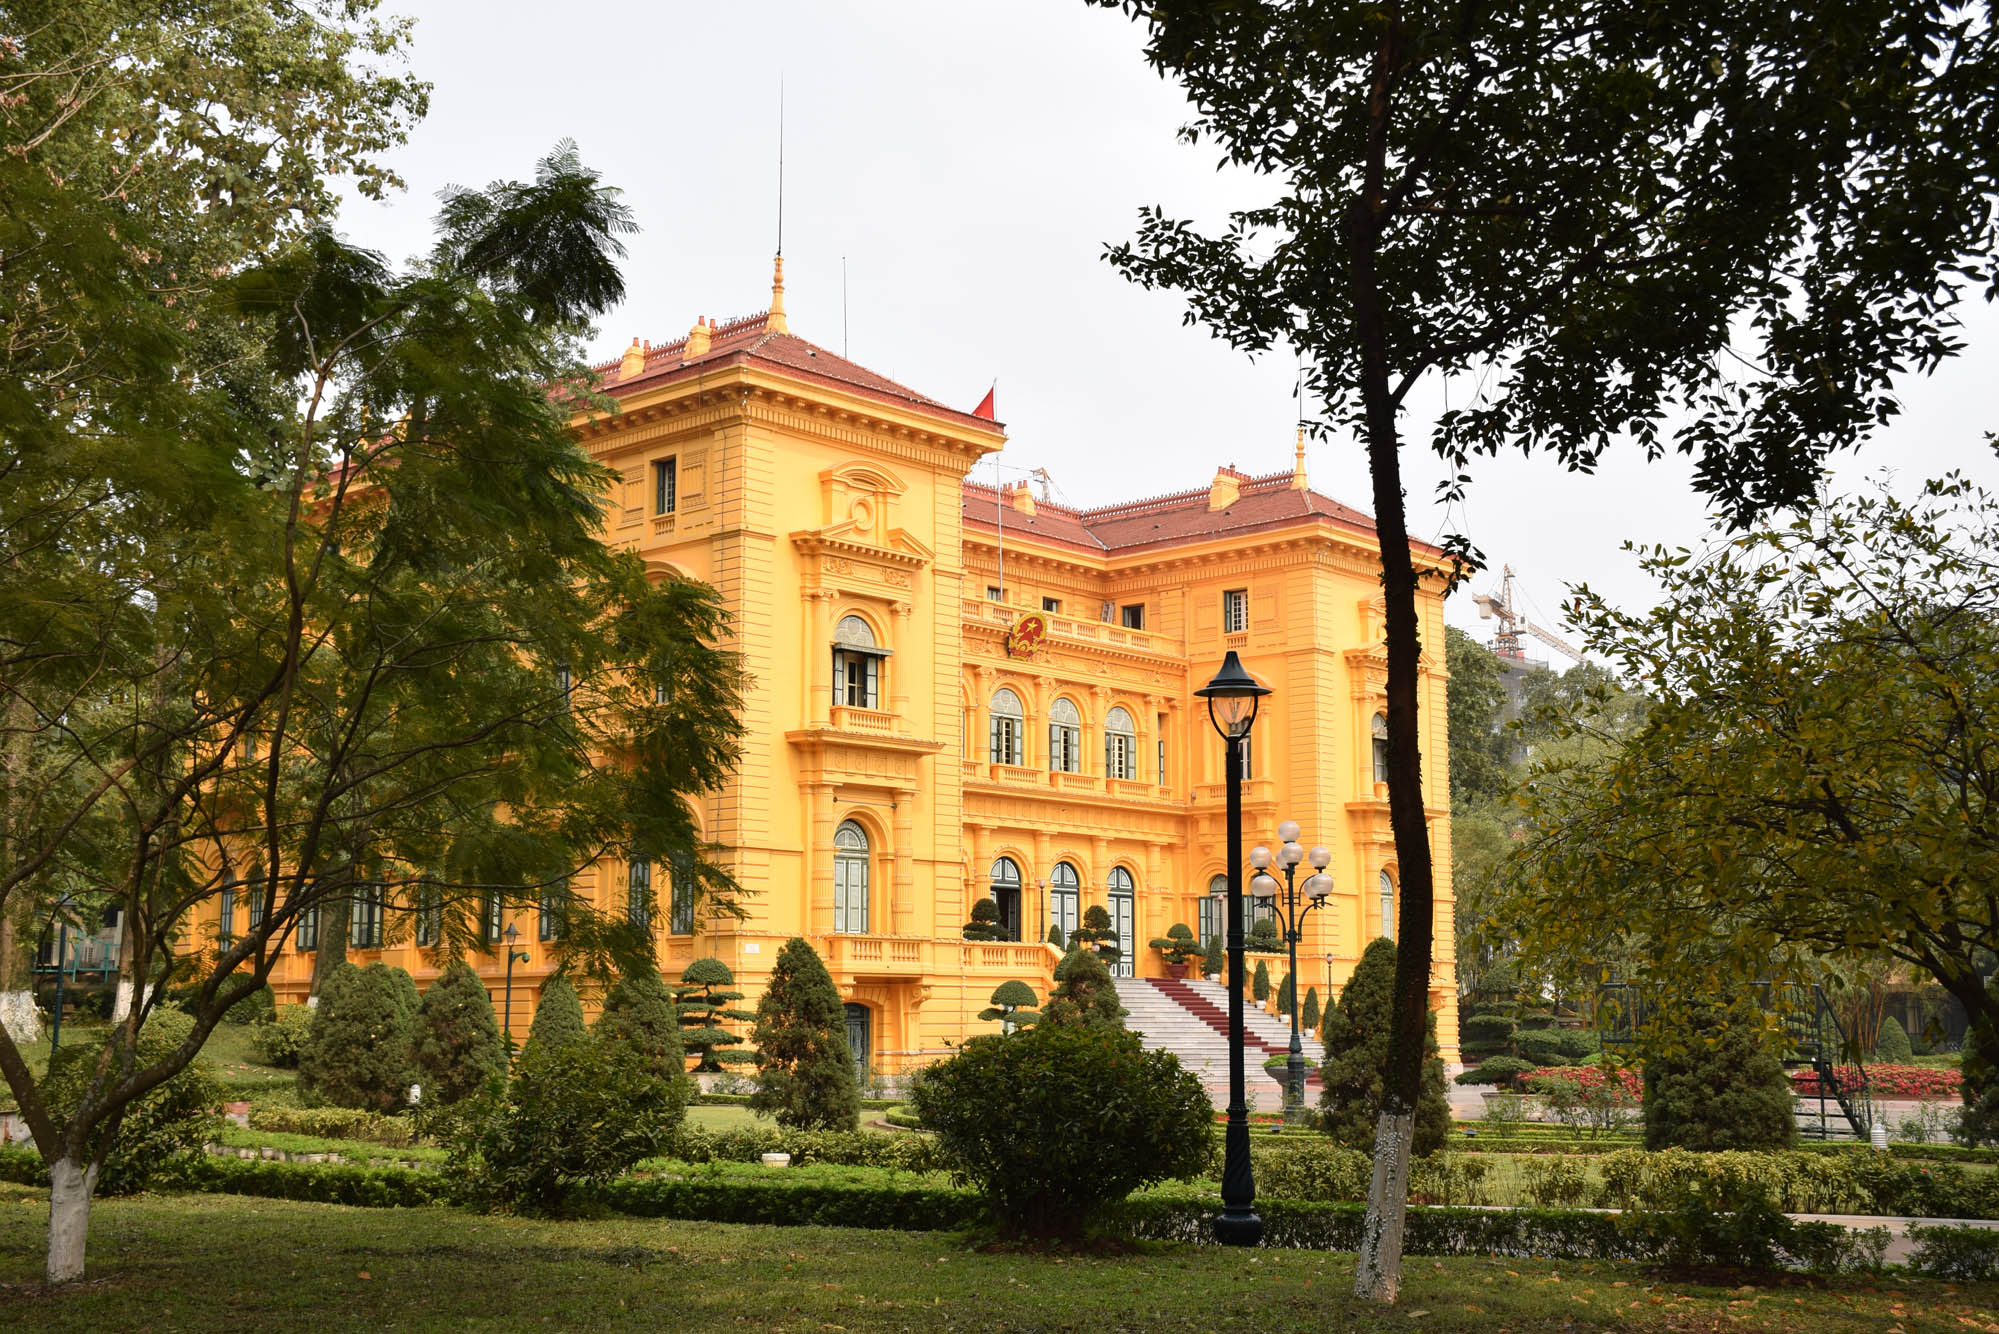 Palácio presidencial - Ho Chi Minh Complex - Hanoi